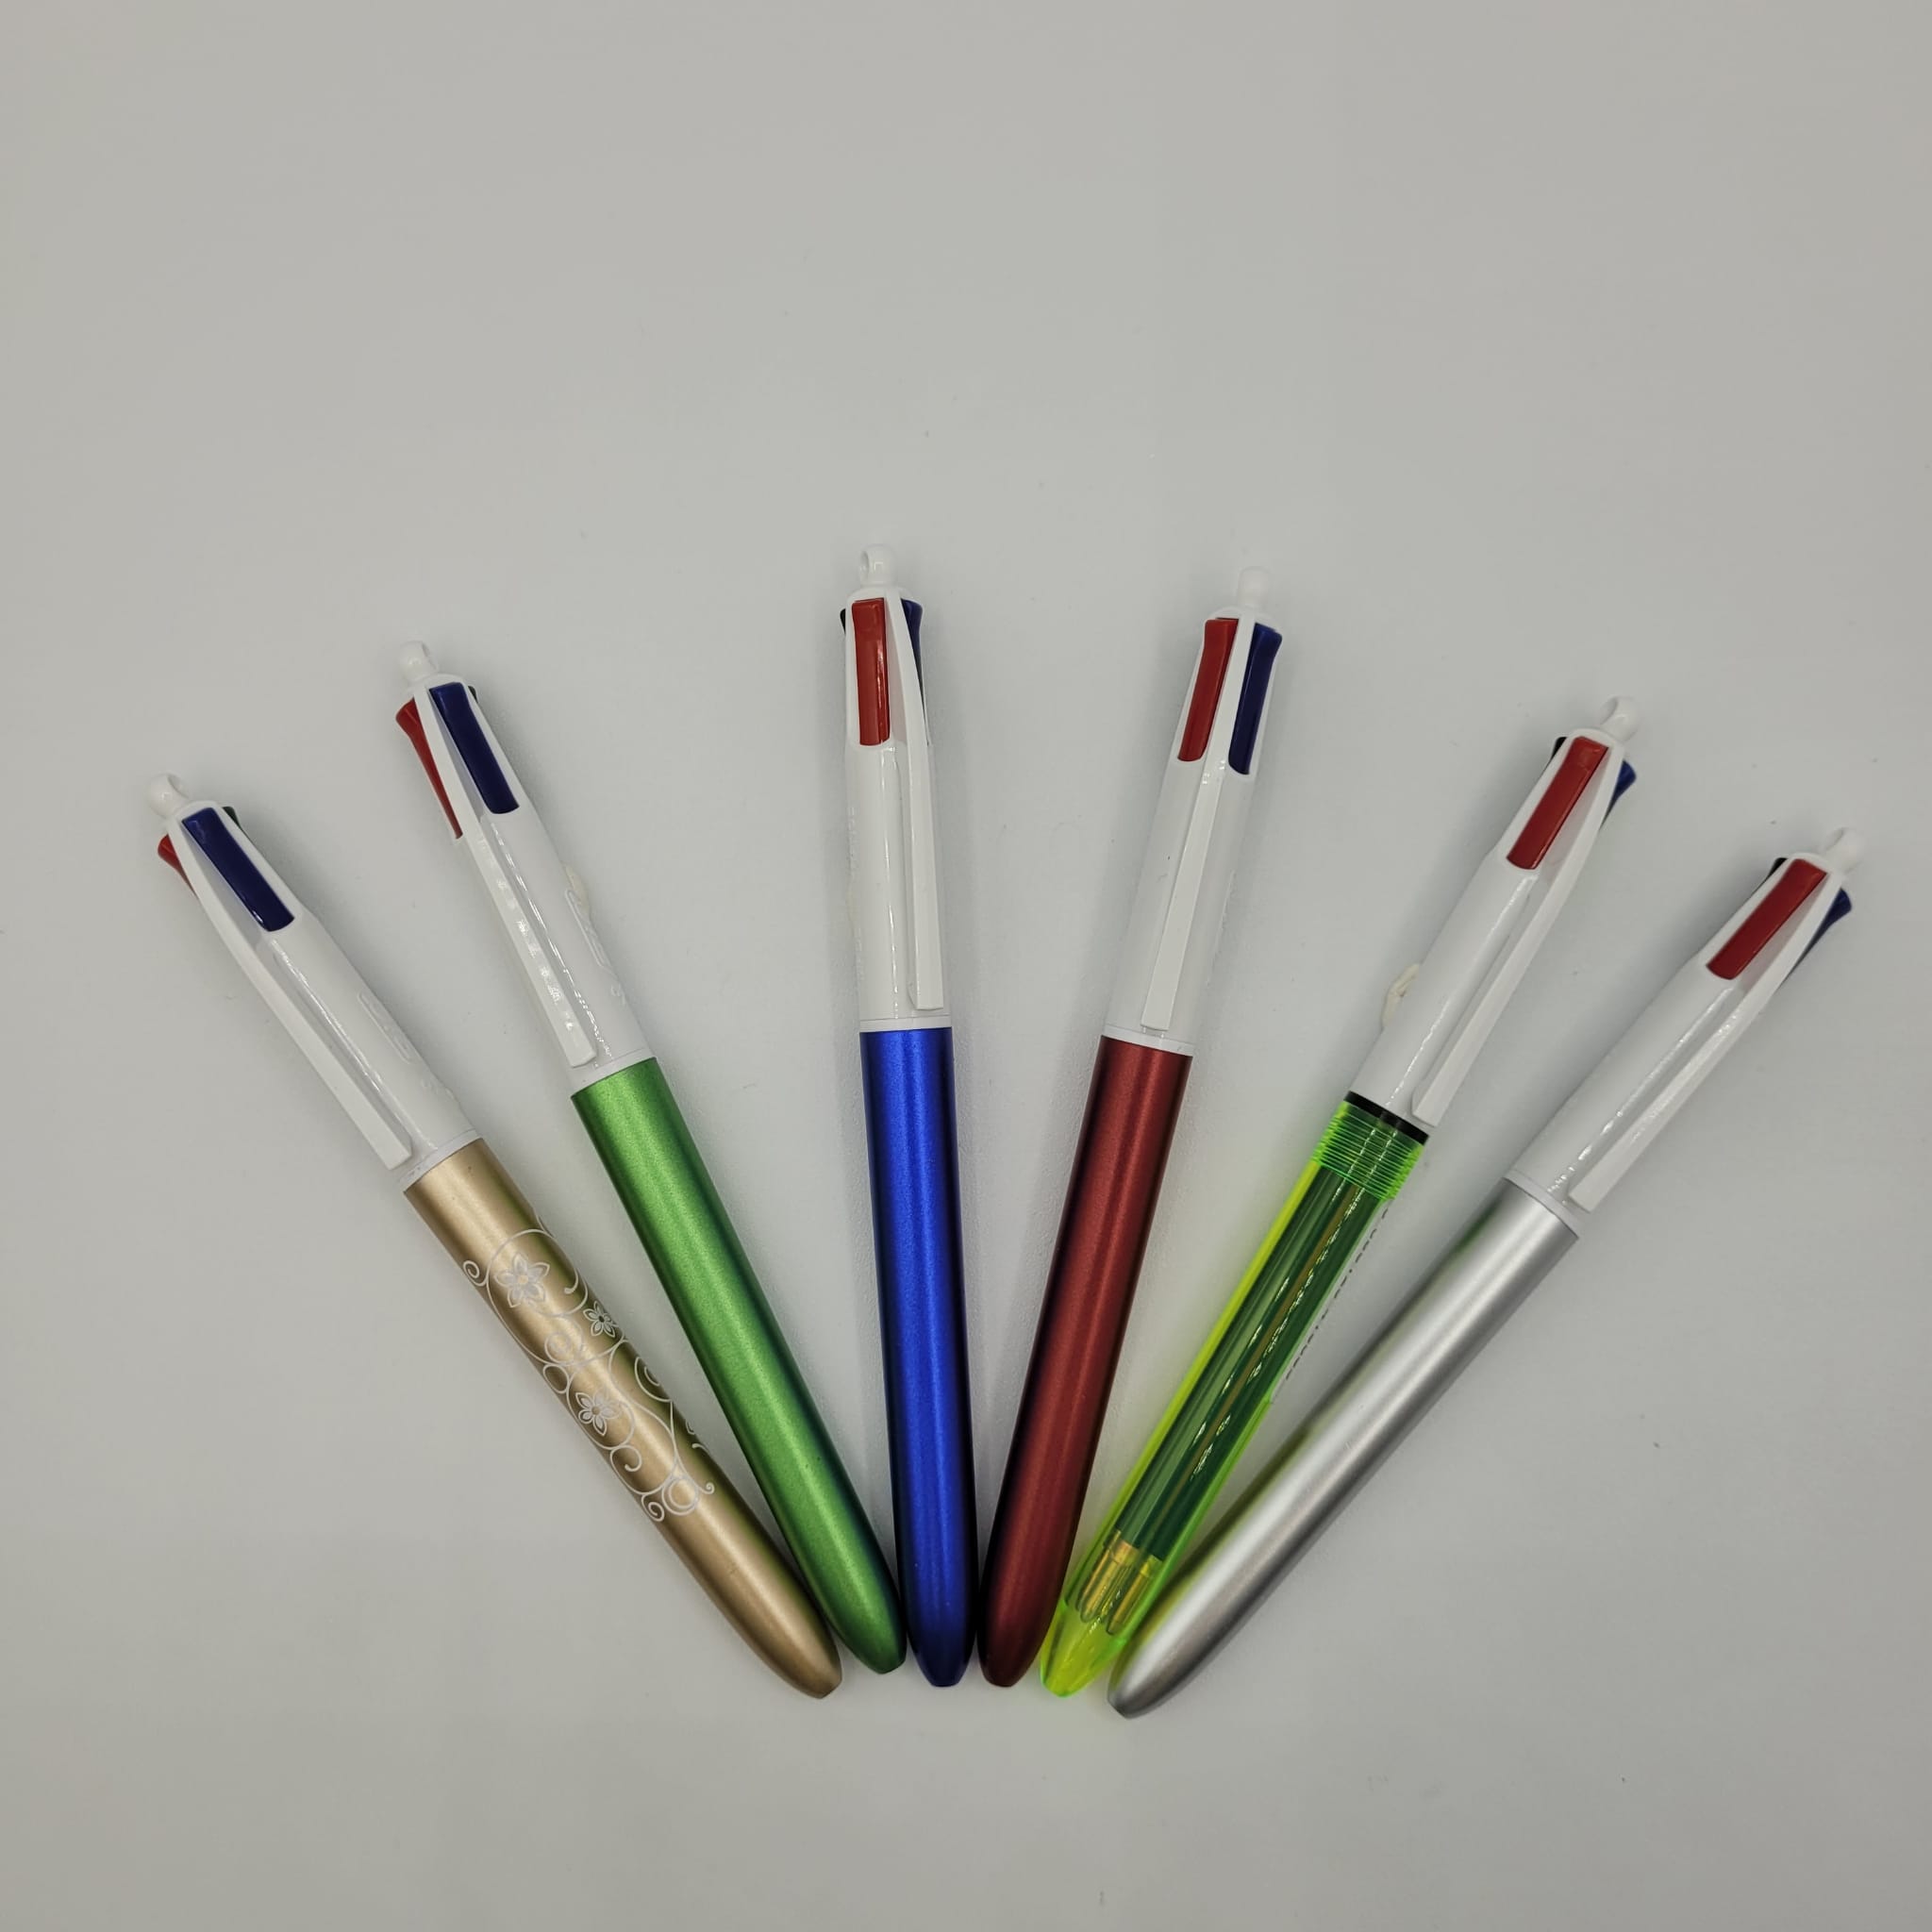 Penna Bic 4 Colori – Il Gessetto